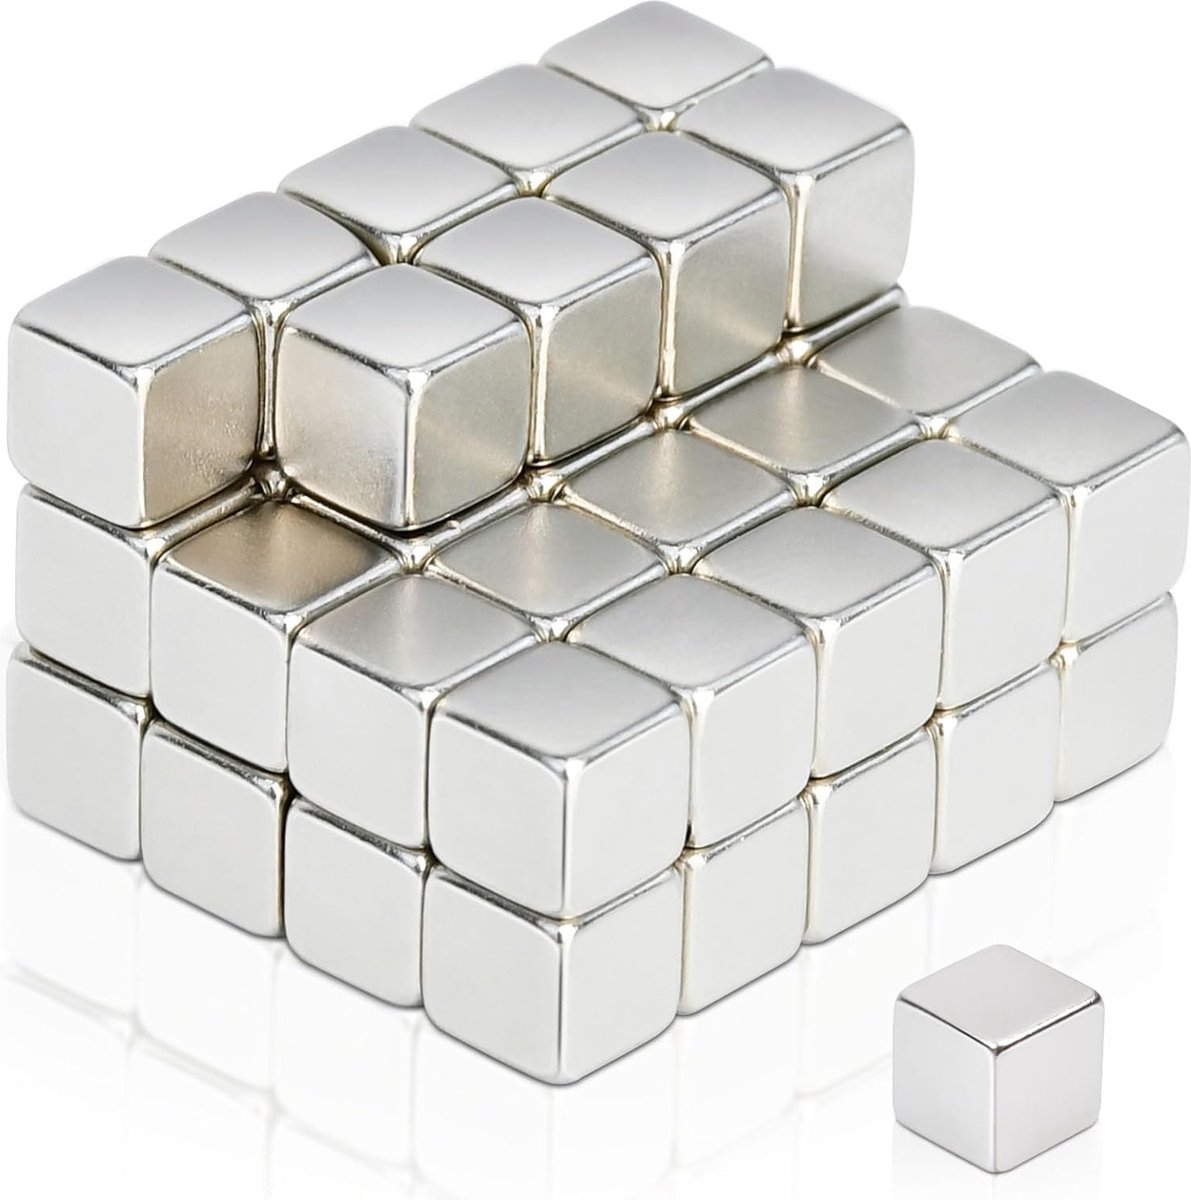 5 x 5 x 5 mm Sterke Neodymium Magneet - Extra Krachtige Magneten - Rechthoekig, Mini Magneten - Kleine Magneten voor Koelkast Magneetbord Whiteboard Whiteboard Knutselen Kantoor - 50 Stuks